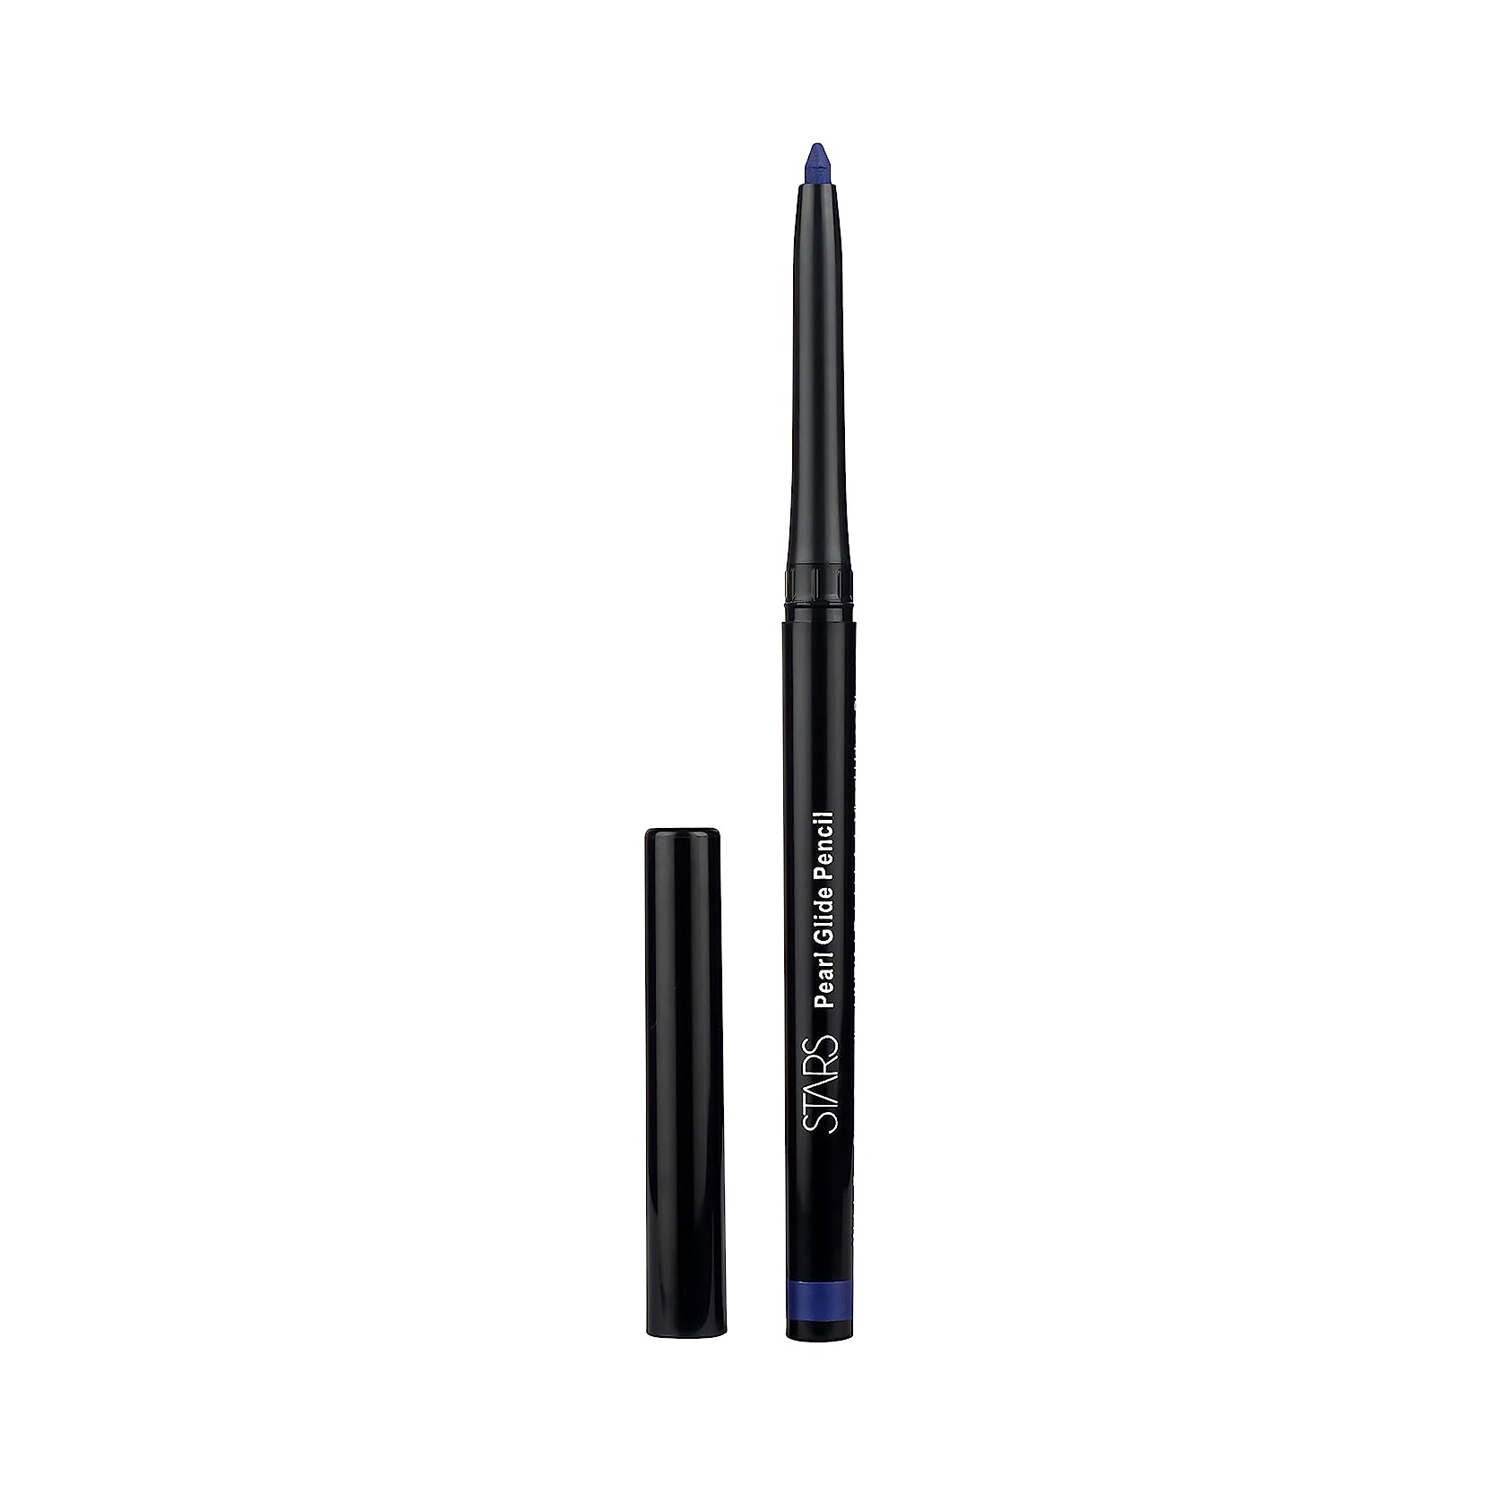 Stars Cosmetics | Stars Cosmetics Pearl Glide Eye Pencil - 02 Midnight Blue (30g)